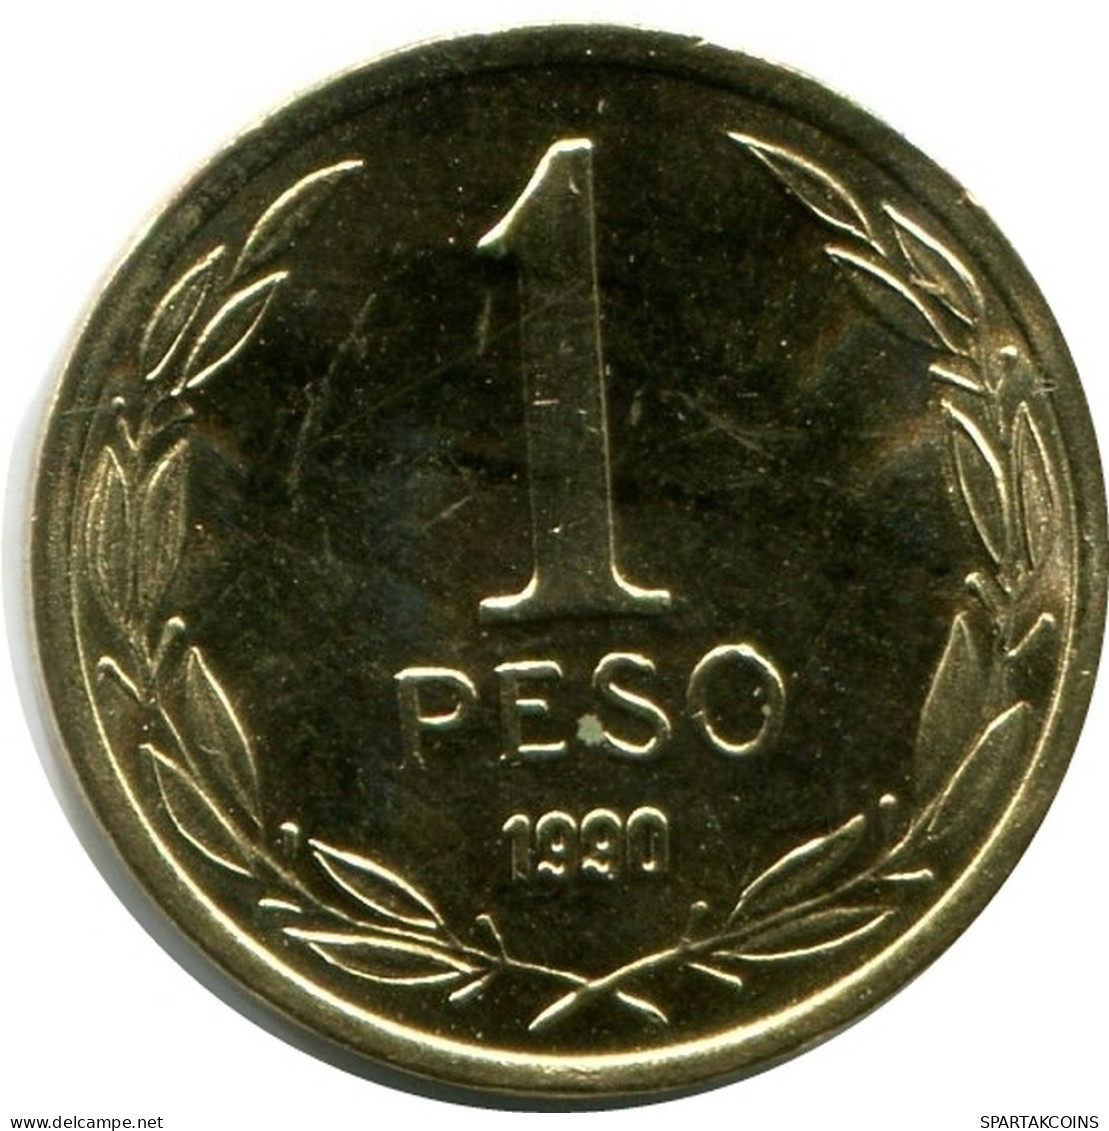 1 PESO 1990 CHILE UNC Moneda #M10128.E.A - Chili